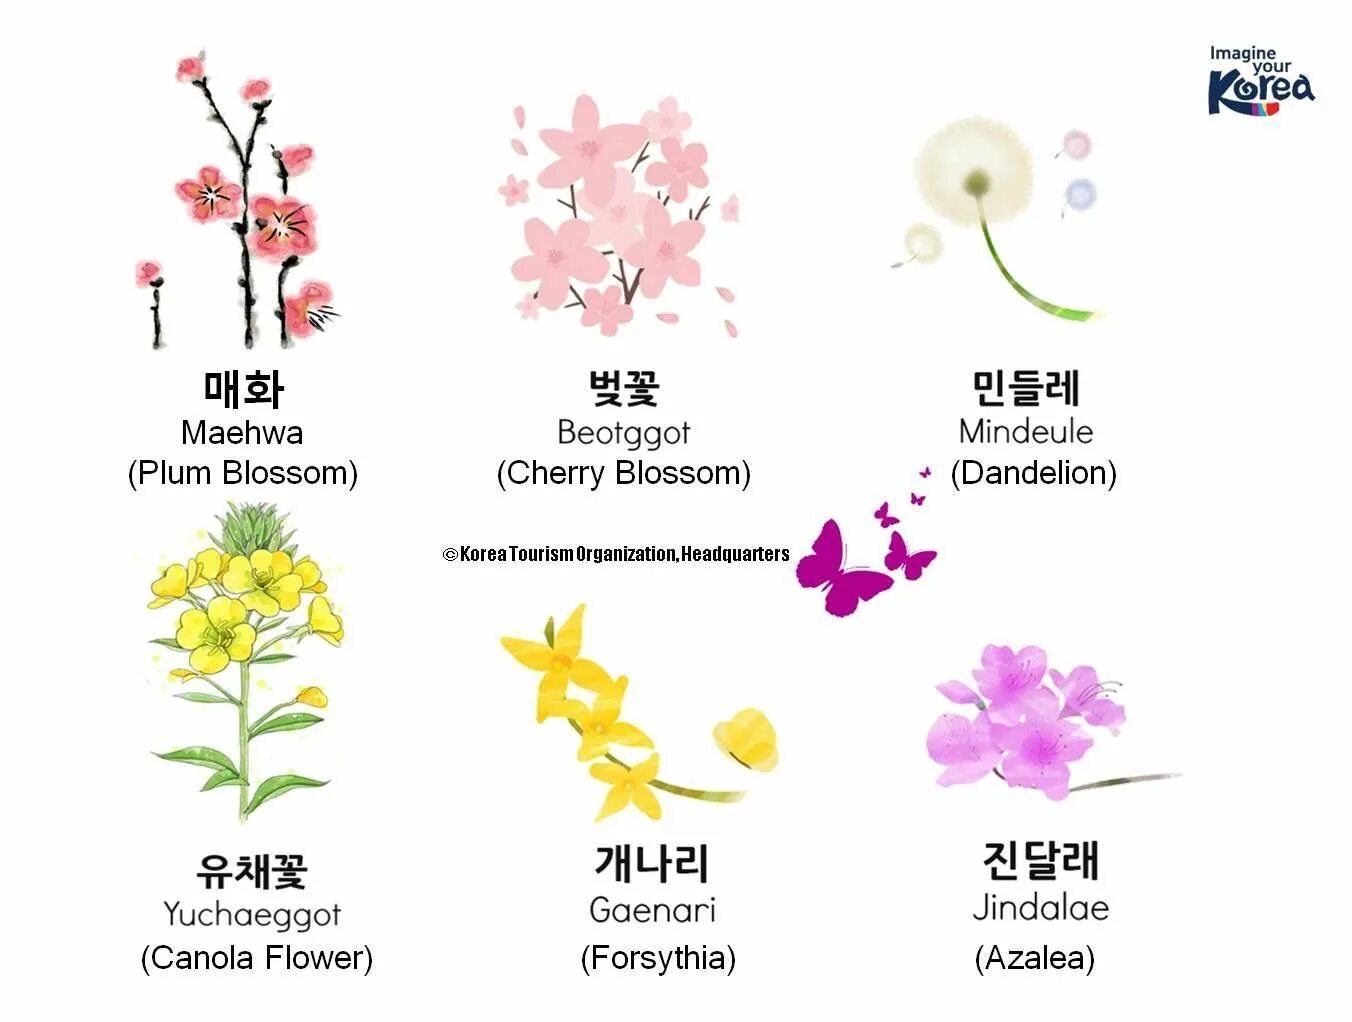 Сакура что означает. Названия цветов на корейском. Растения на корейском языке. Цветы по корейски. Название цветов на корейском языке.